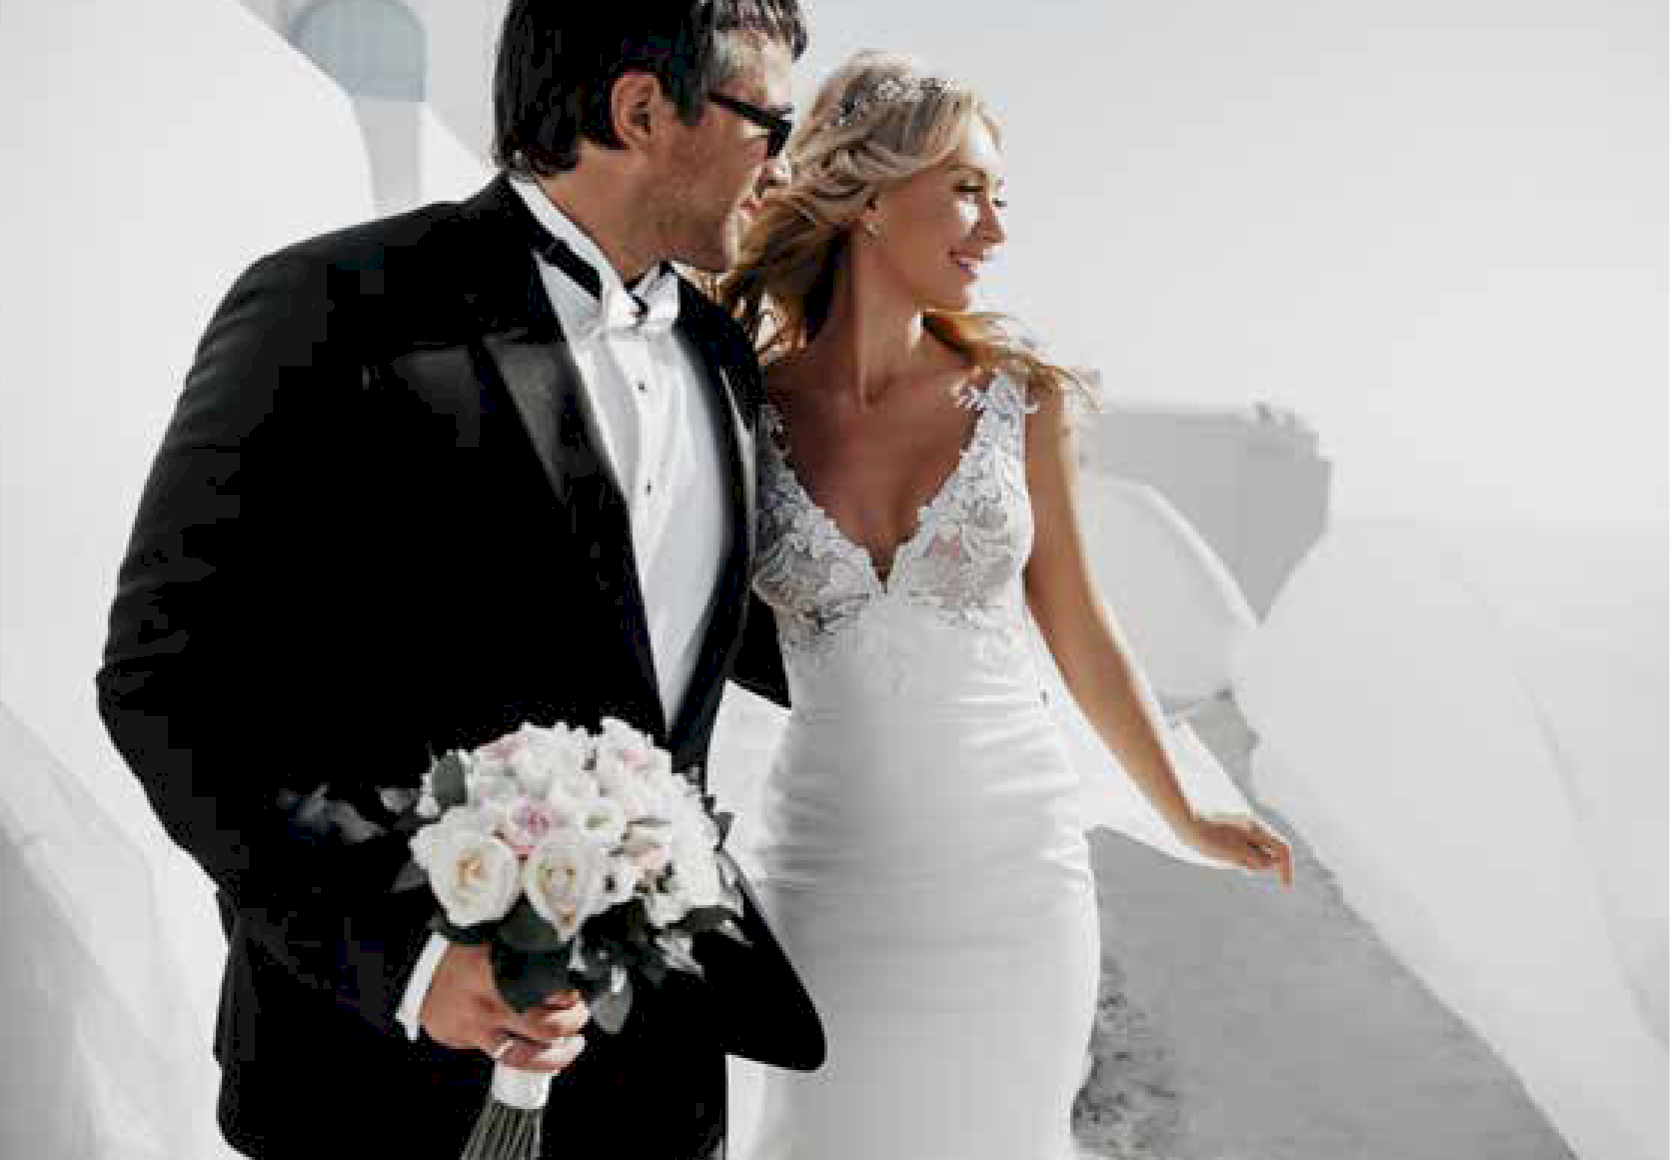 Main page: свадьба на санторини, свадебное агентство Julia Veselova - Фото 4